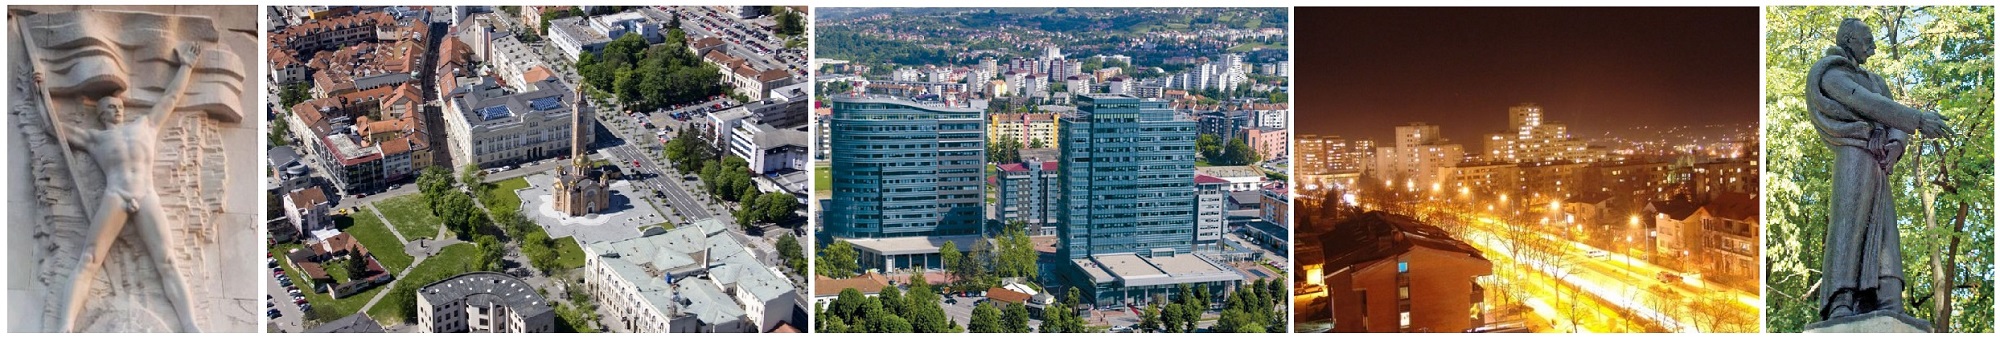 Zašto je Banja Luka centar svijeta